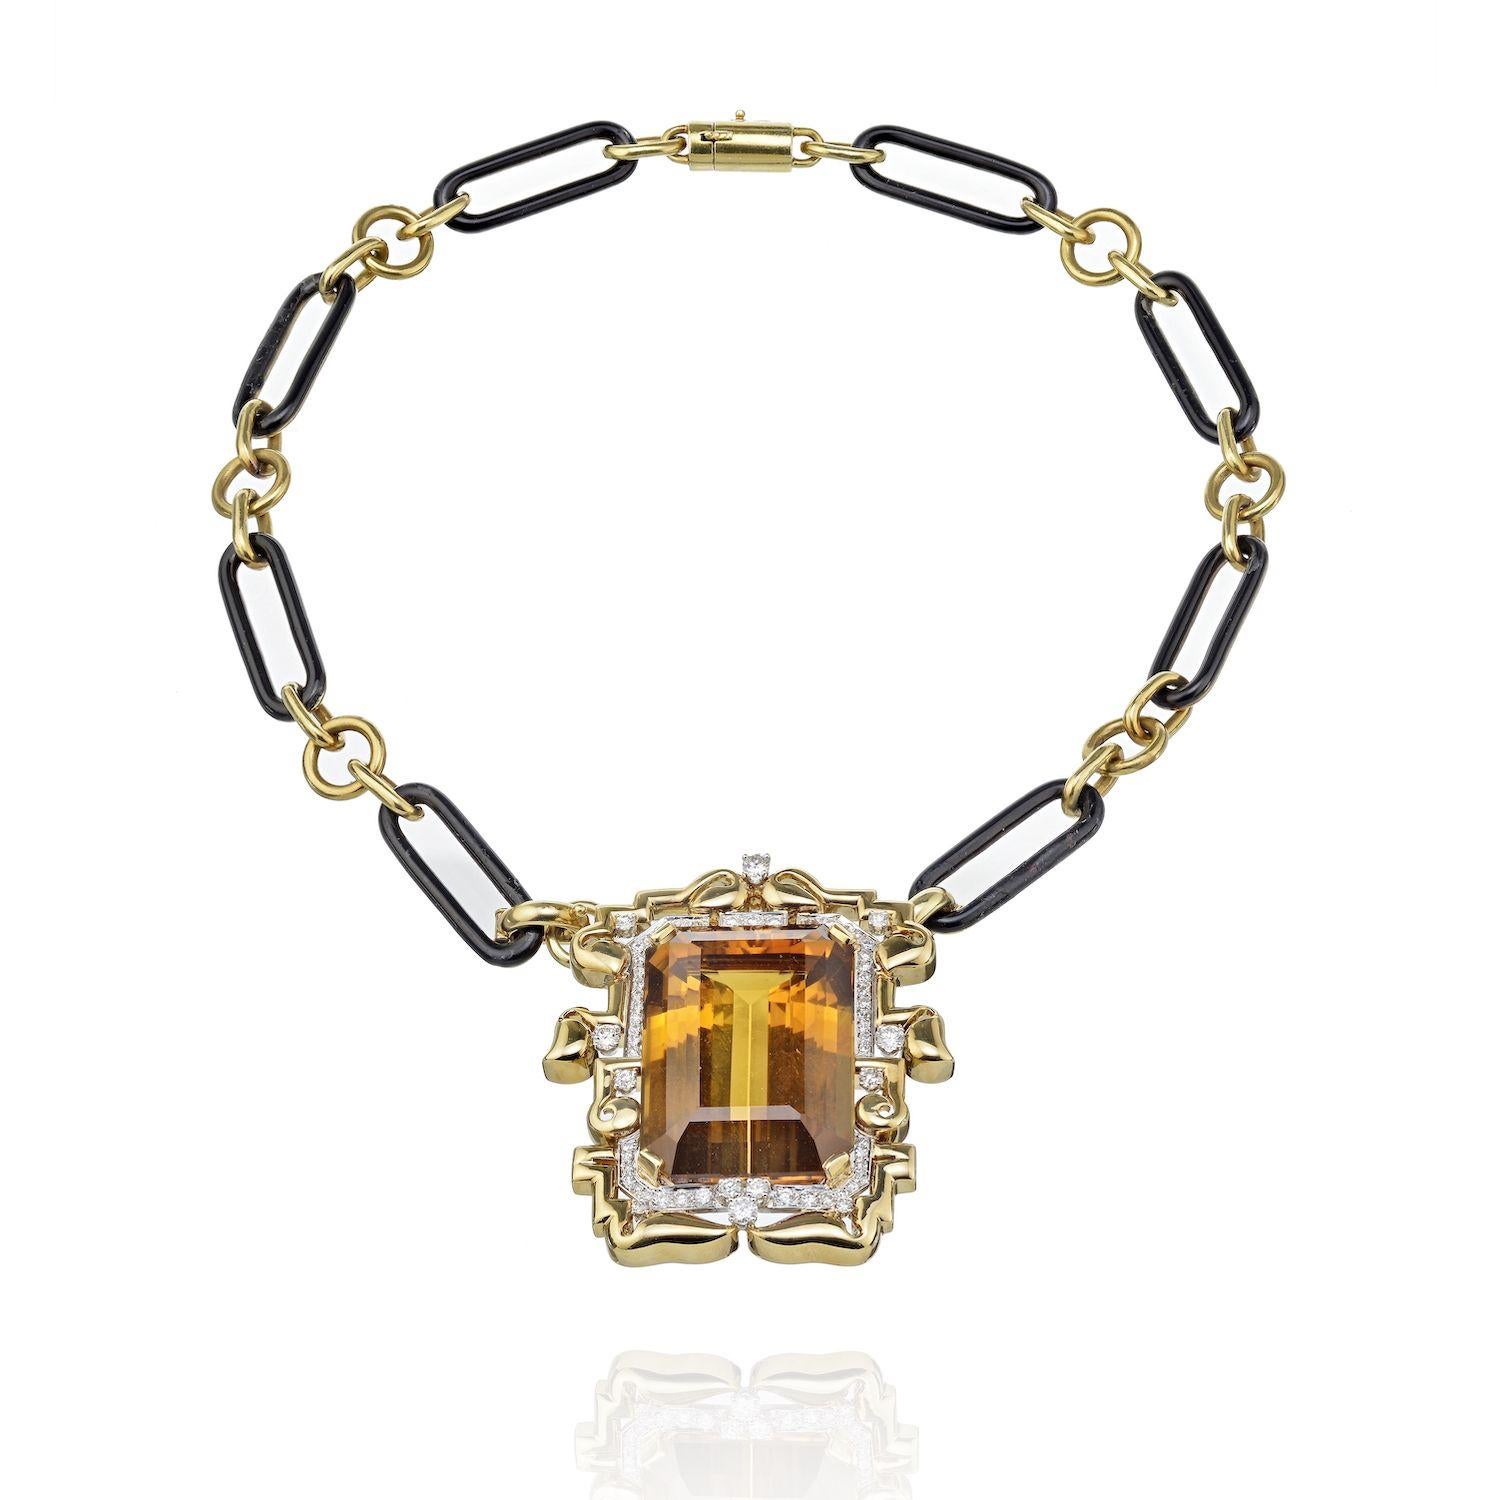 Il s'agit d'un collier broche très spécial et rare réalisé par David Webb dans les années 1980. 
La particularité de ce collier est que vous pouvez le porter comme une broche, comme une chaîne à maillons et comme un pendentif sur une chaîne.